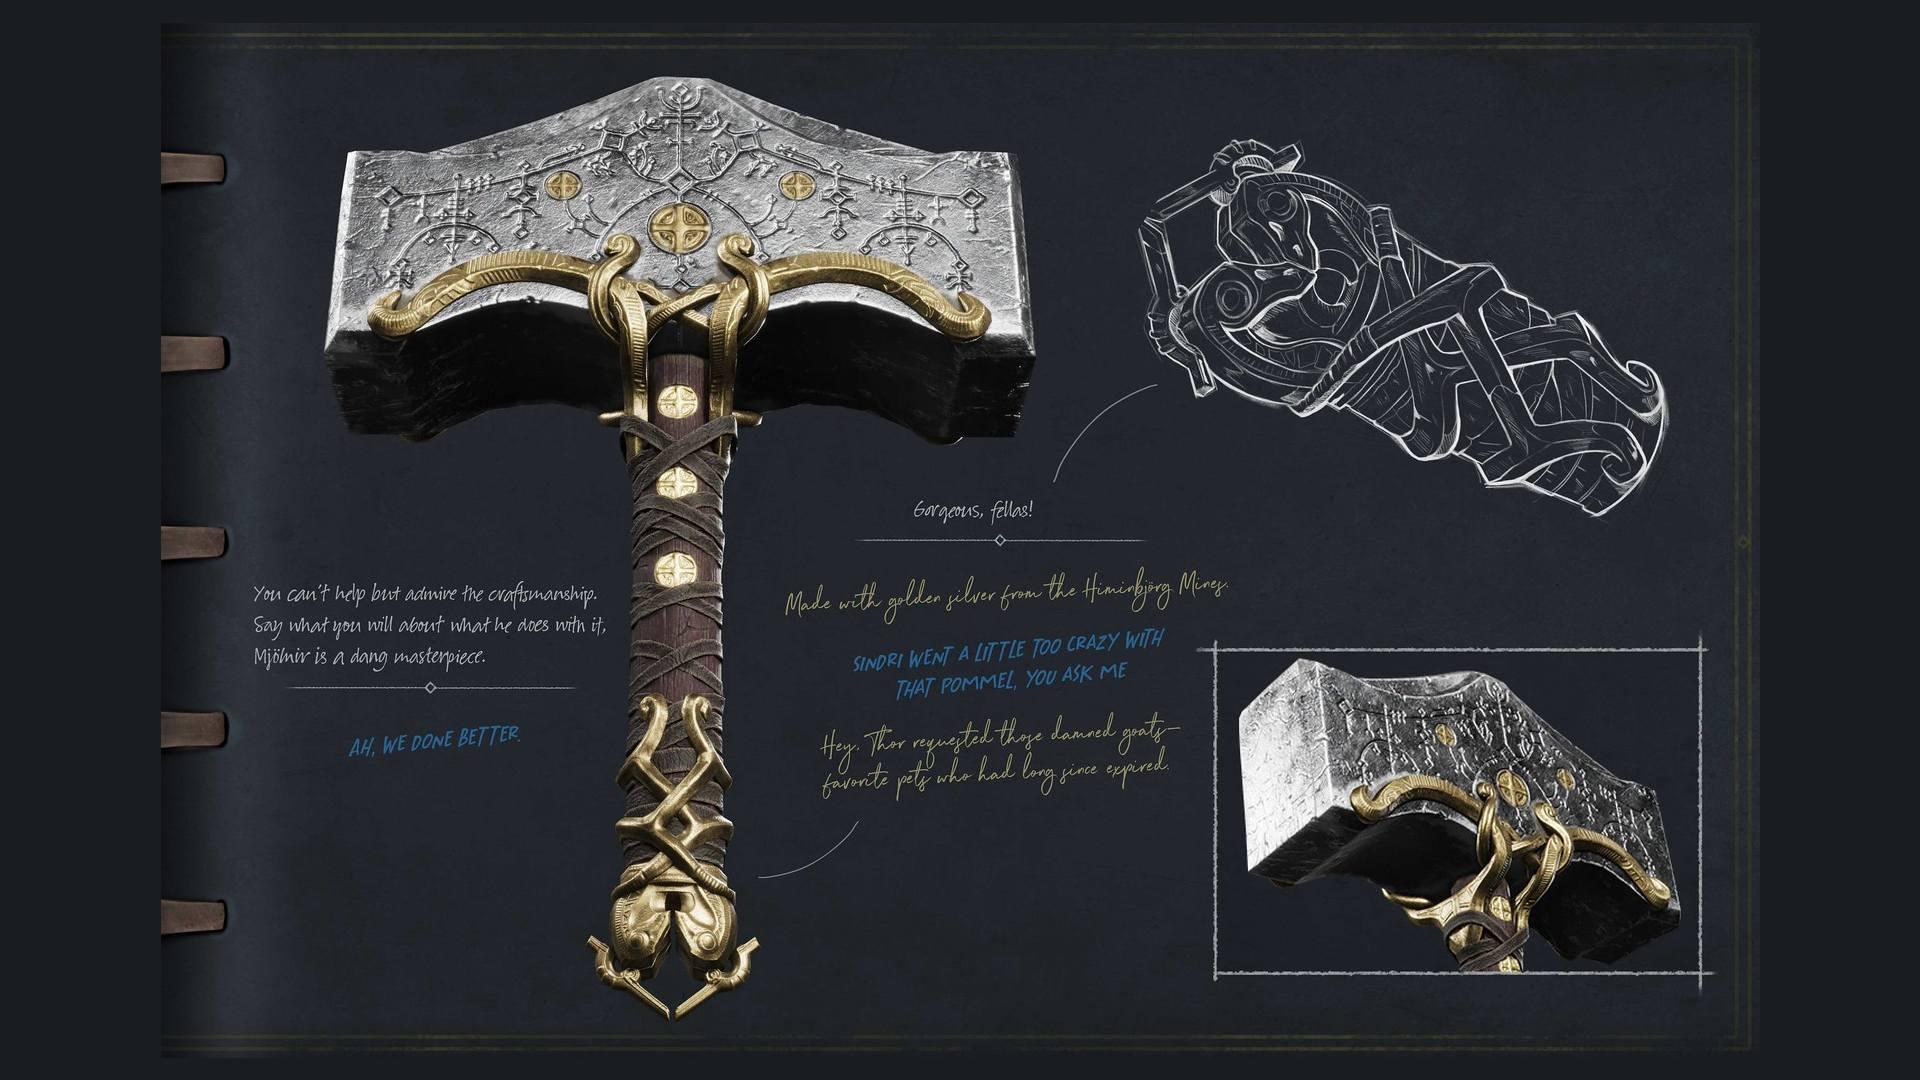 Design de Thor em God of War: Ragnarok gera repercussão - SBT